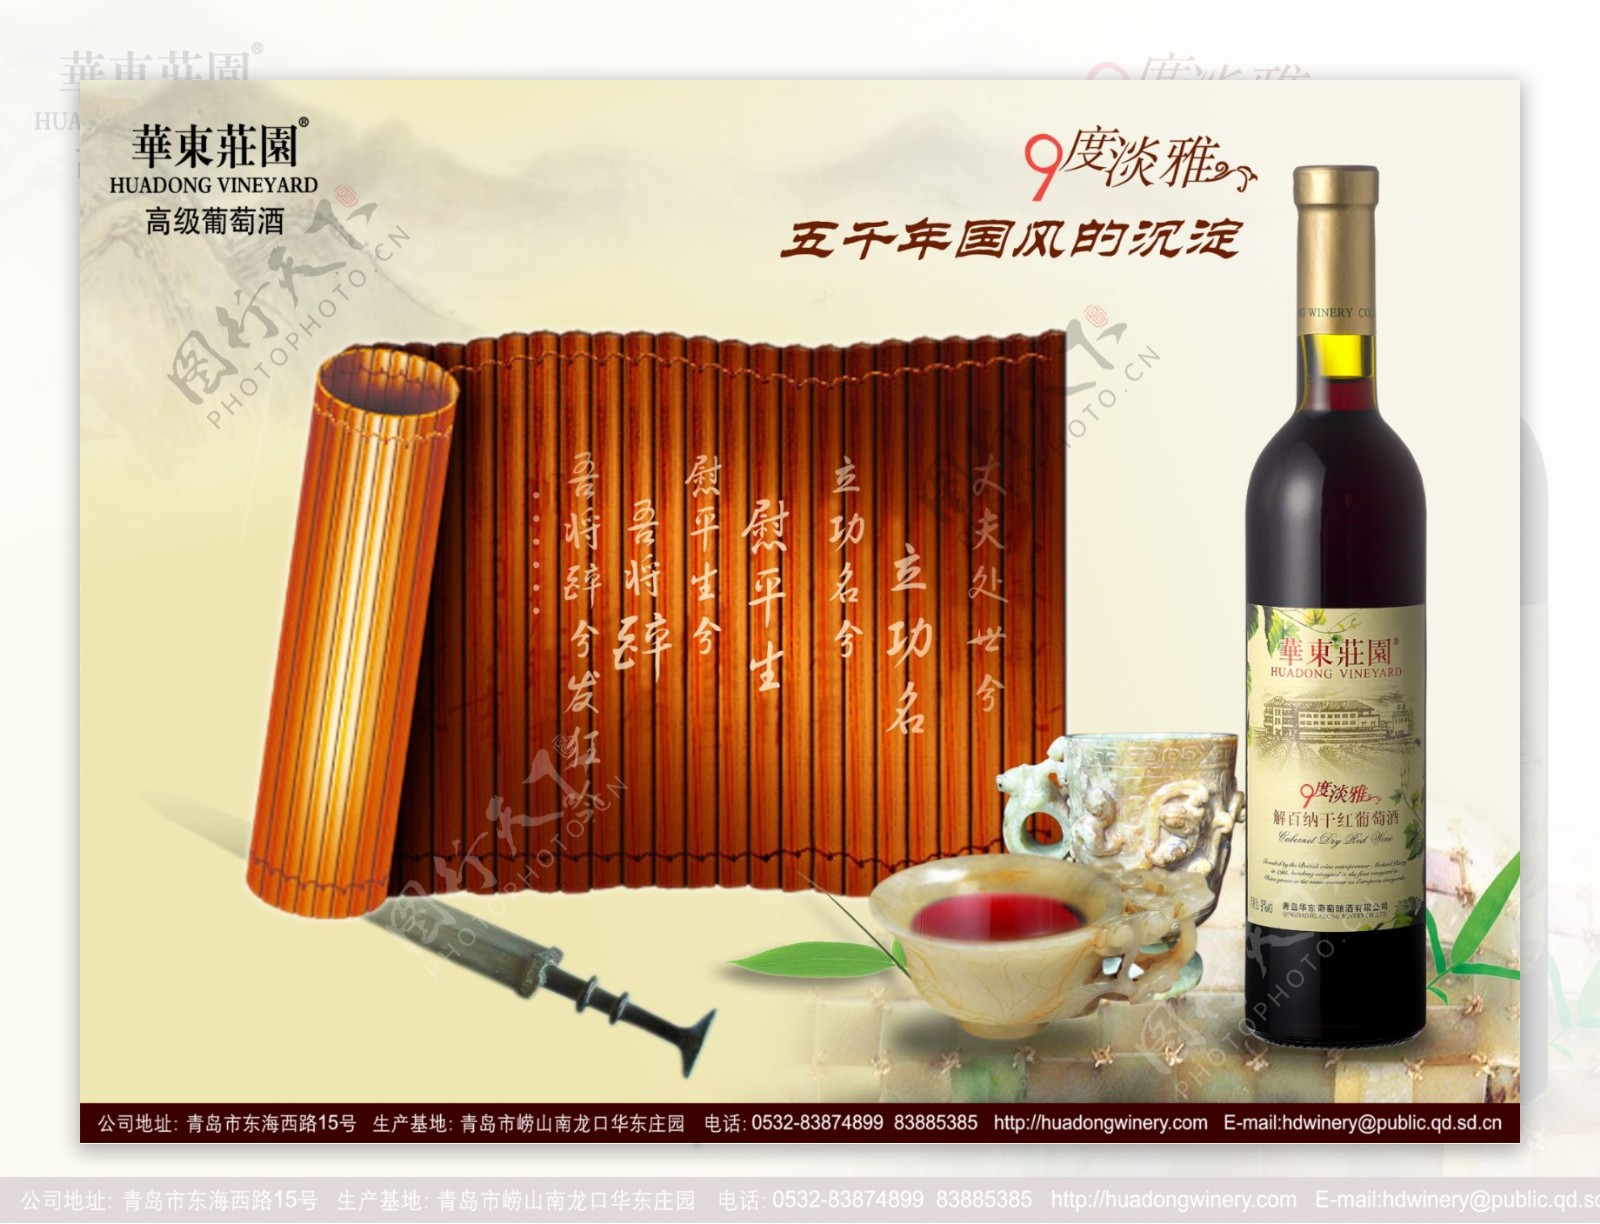 龙腾广告平面广告PSD分层素材源文件酒干红葡萄酒华东庄园